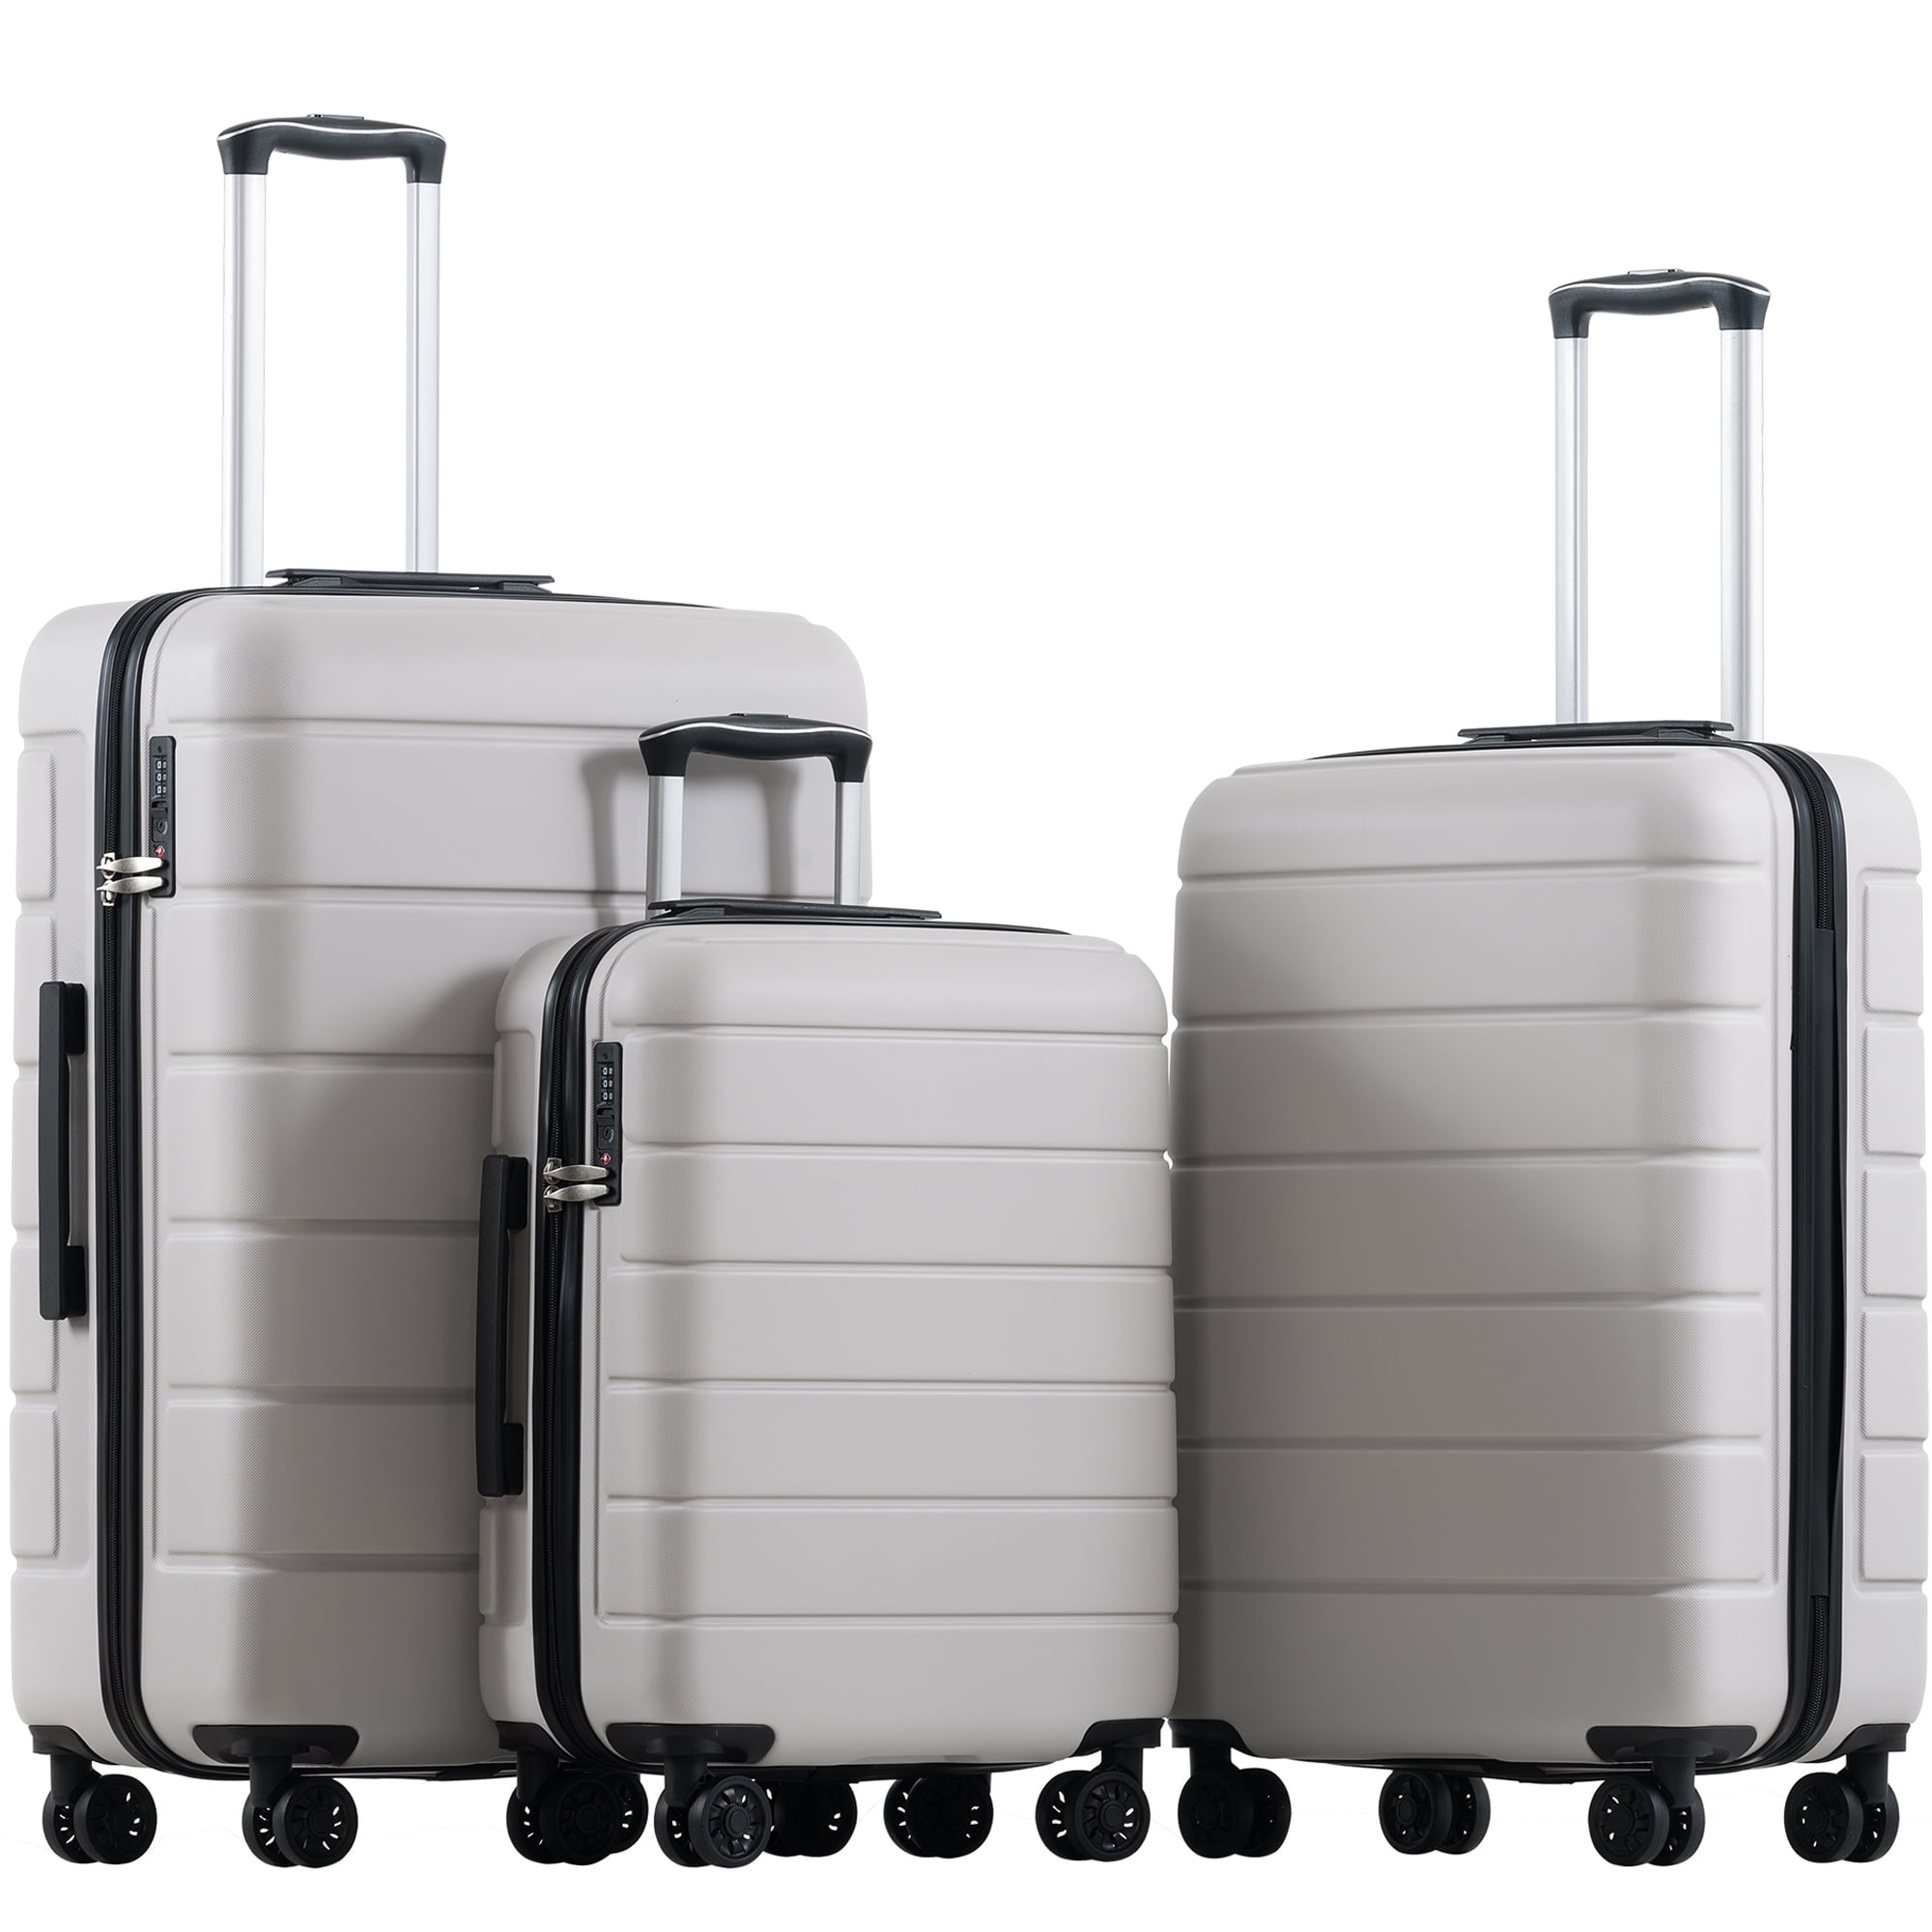 Upgrade Carry on Luggage Set of 3, Roling Suitcase 4-Wheel TSA Lock ...